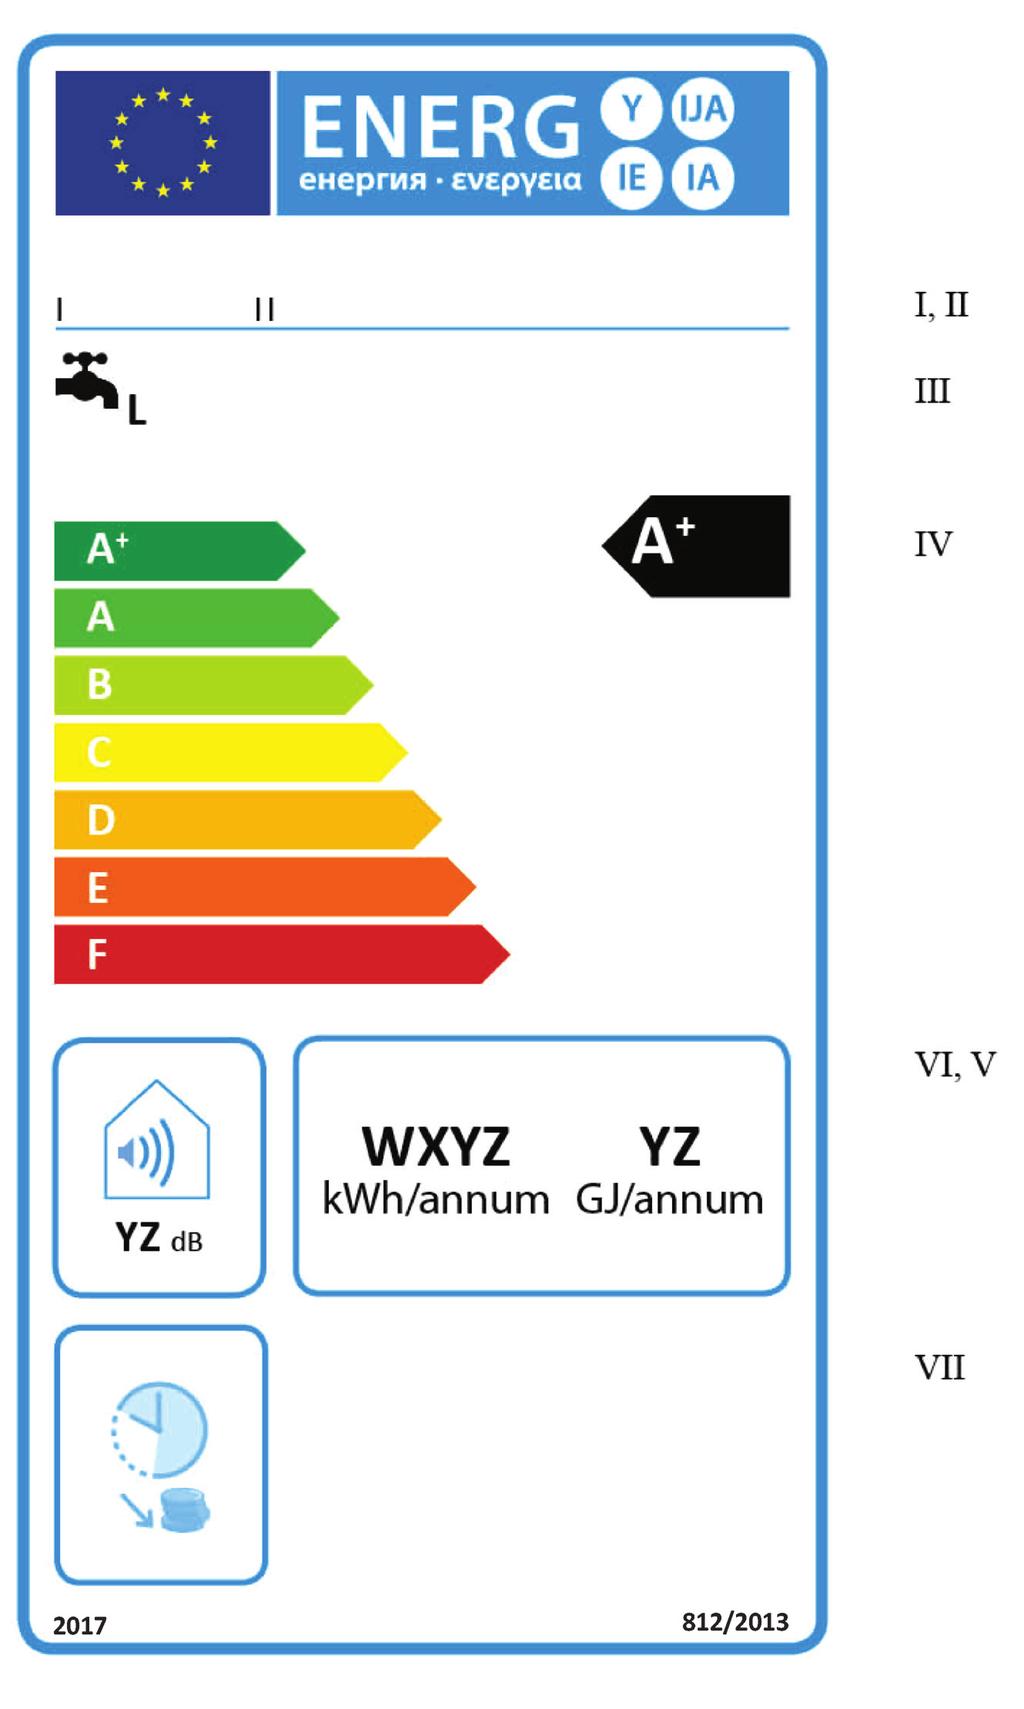 RO L 239/98 1.2. Jurnalul Oficial al Uniunii Europene Eticheta 2 1.2.1. Instalații convenționale pentru încălzirea apei din clasele de randament energetic aferent încălzirii apei A+-F (a) Eticheta trebuie să conțină informațiile enumerate la punctul 1.